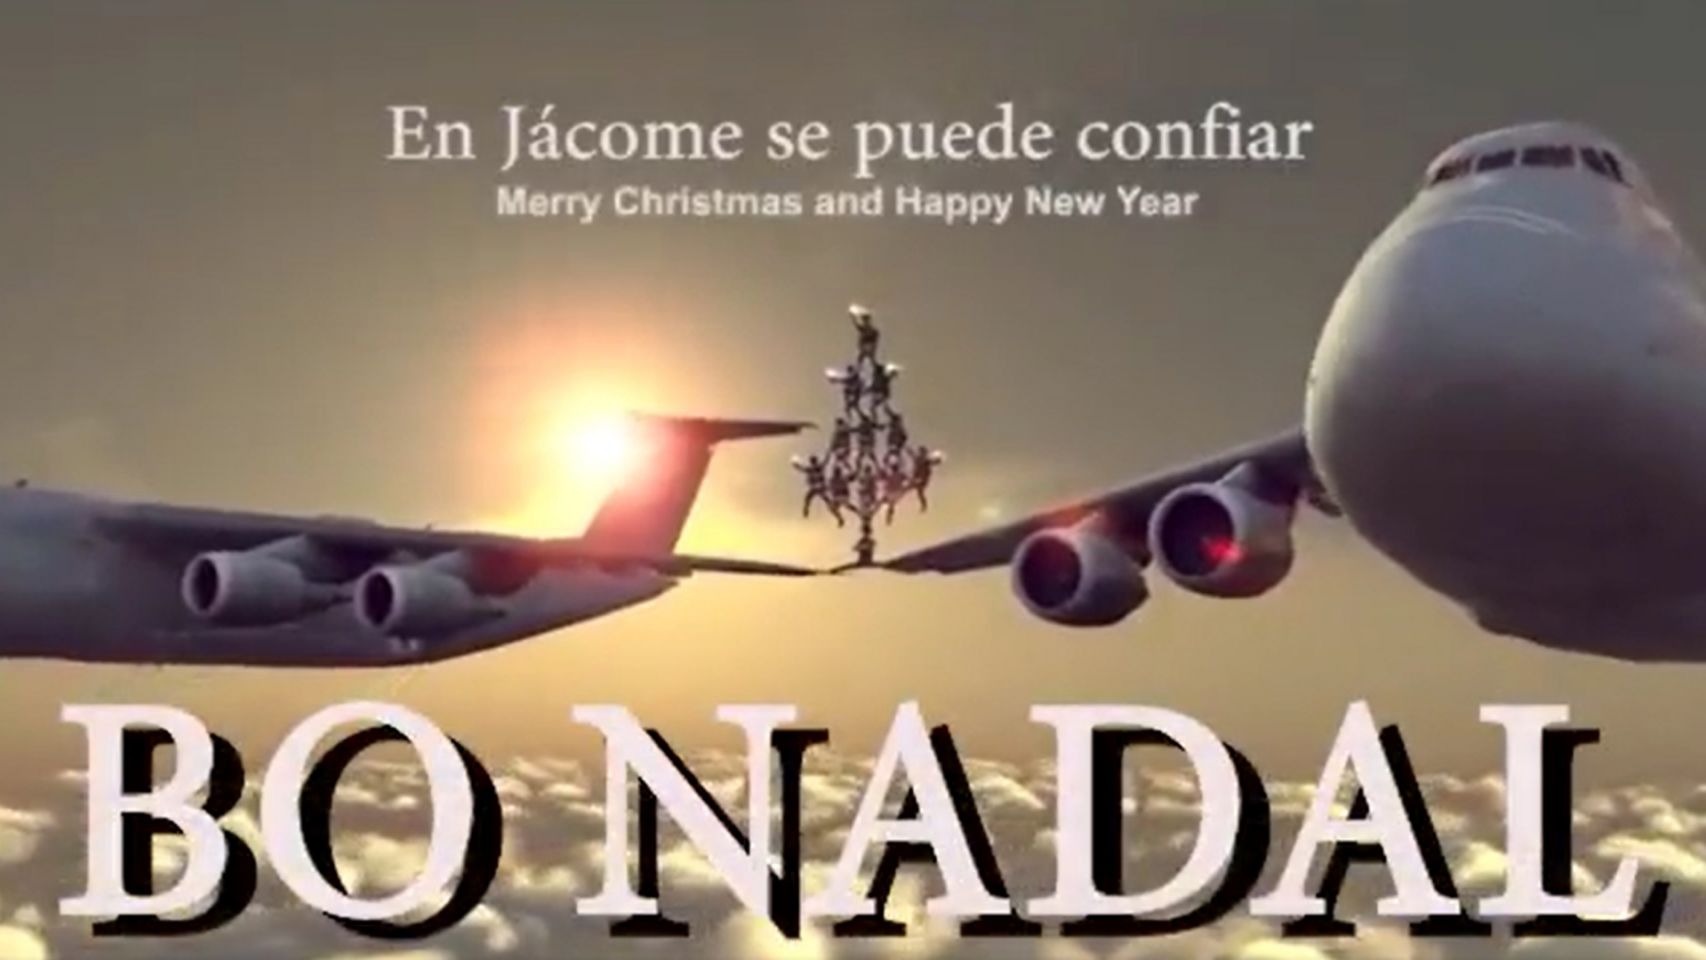 Captura del vídeo de felicitación de Navidad del alcalde de Ourense.